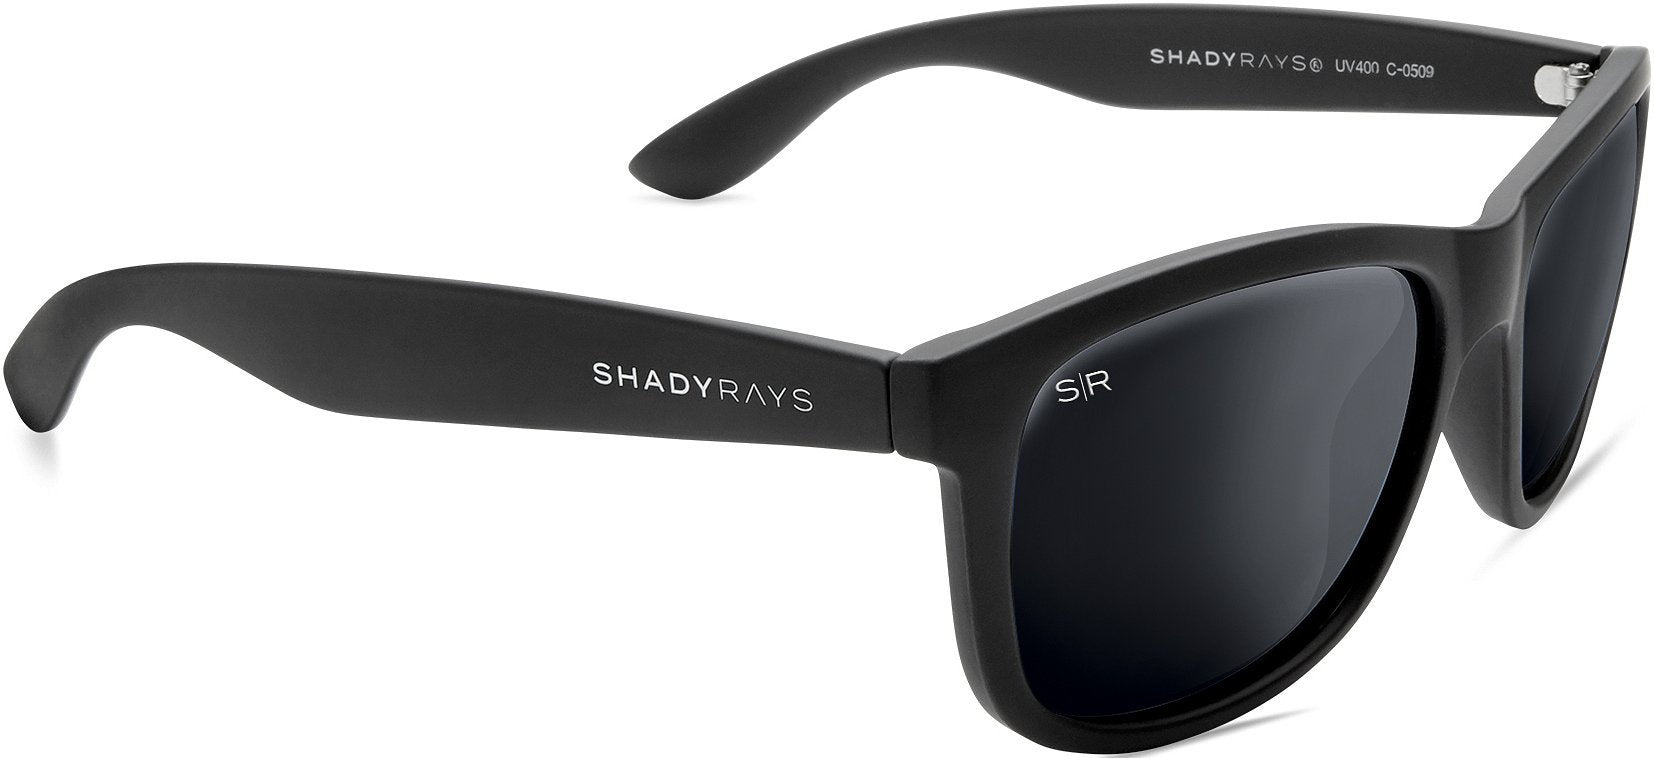 Shady Rays Signature Series - Blackout Polarized Sunglasses Original - Polarized